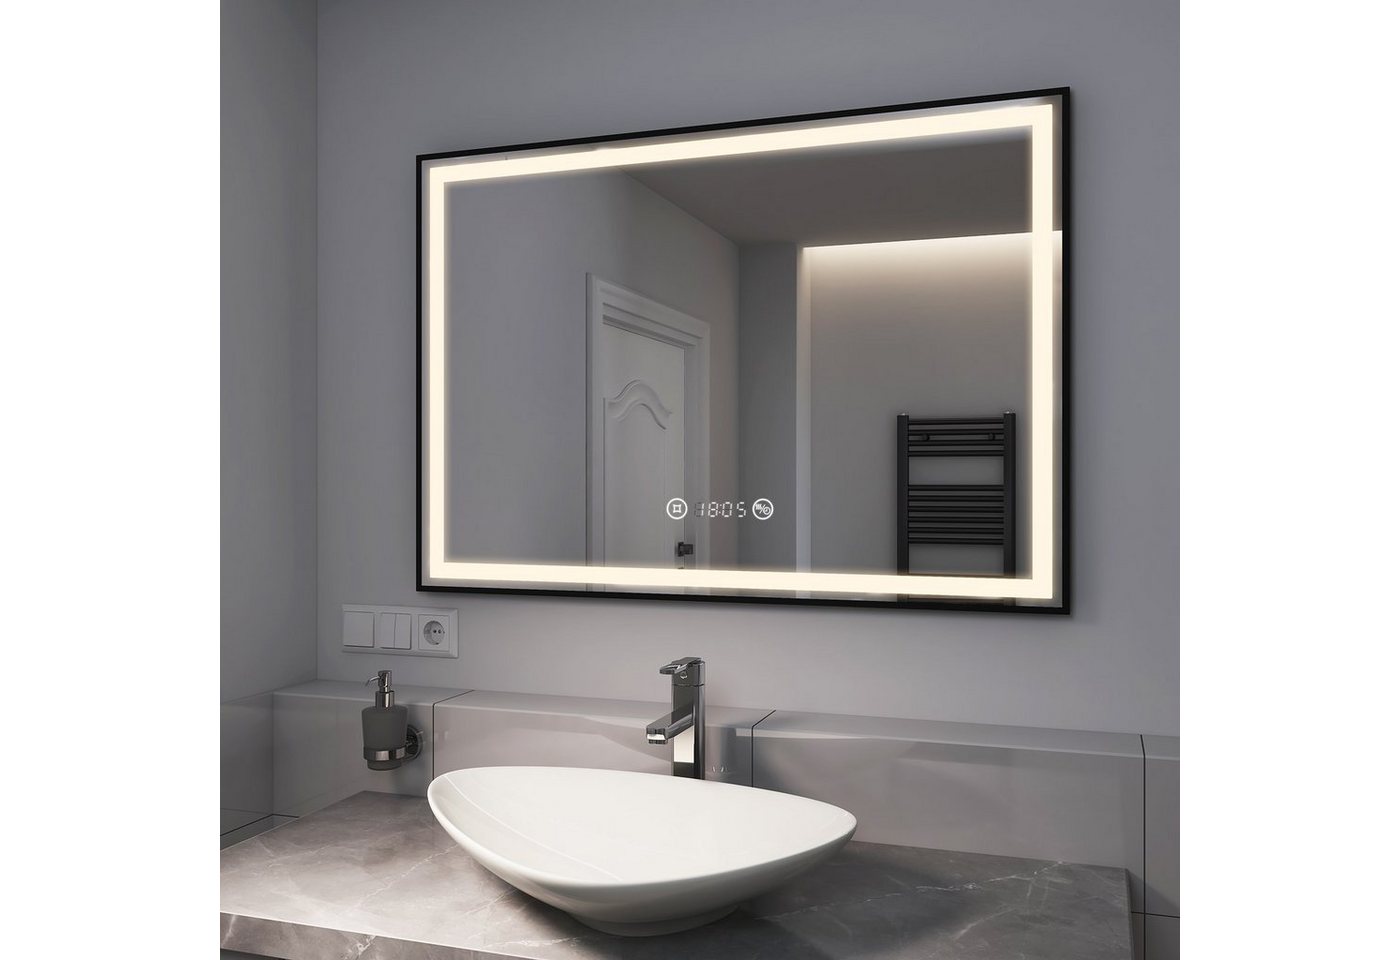 EMKE Badspiegel EMKE Badspiegel mit Beleuchtung LED Badspiegel Schwarz, mit Dimmbar, Beschlagfrei, Uhr, Speicherfunktion von EMKE